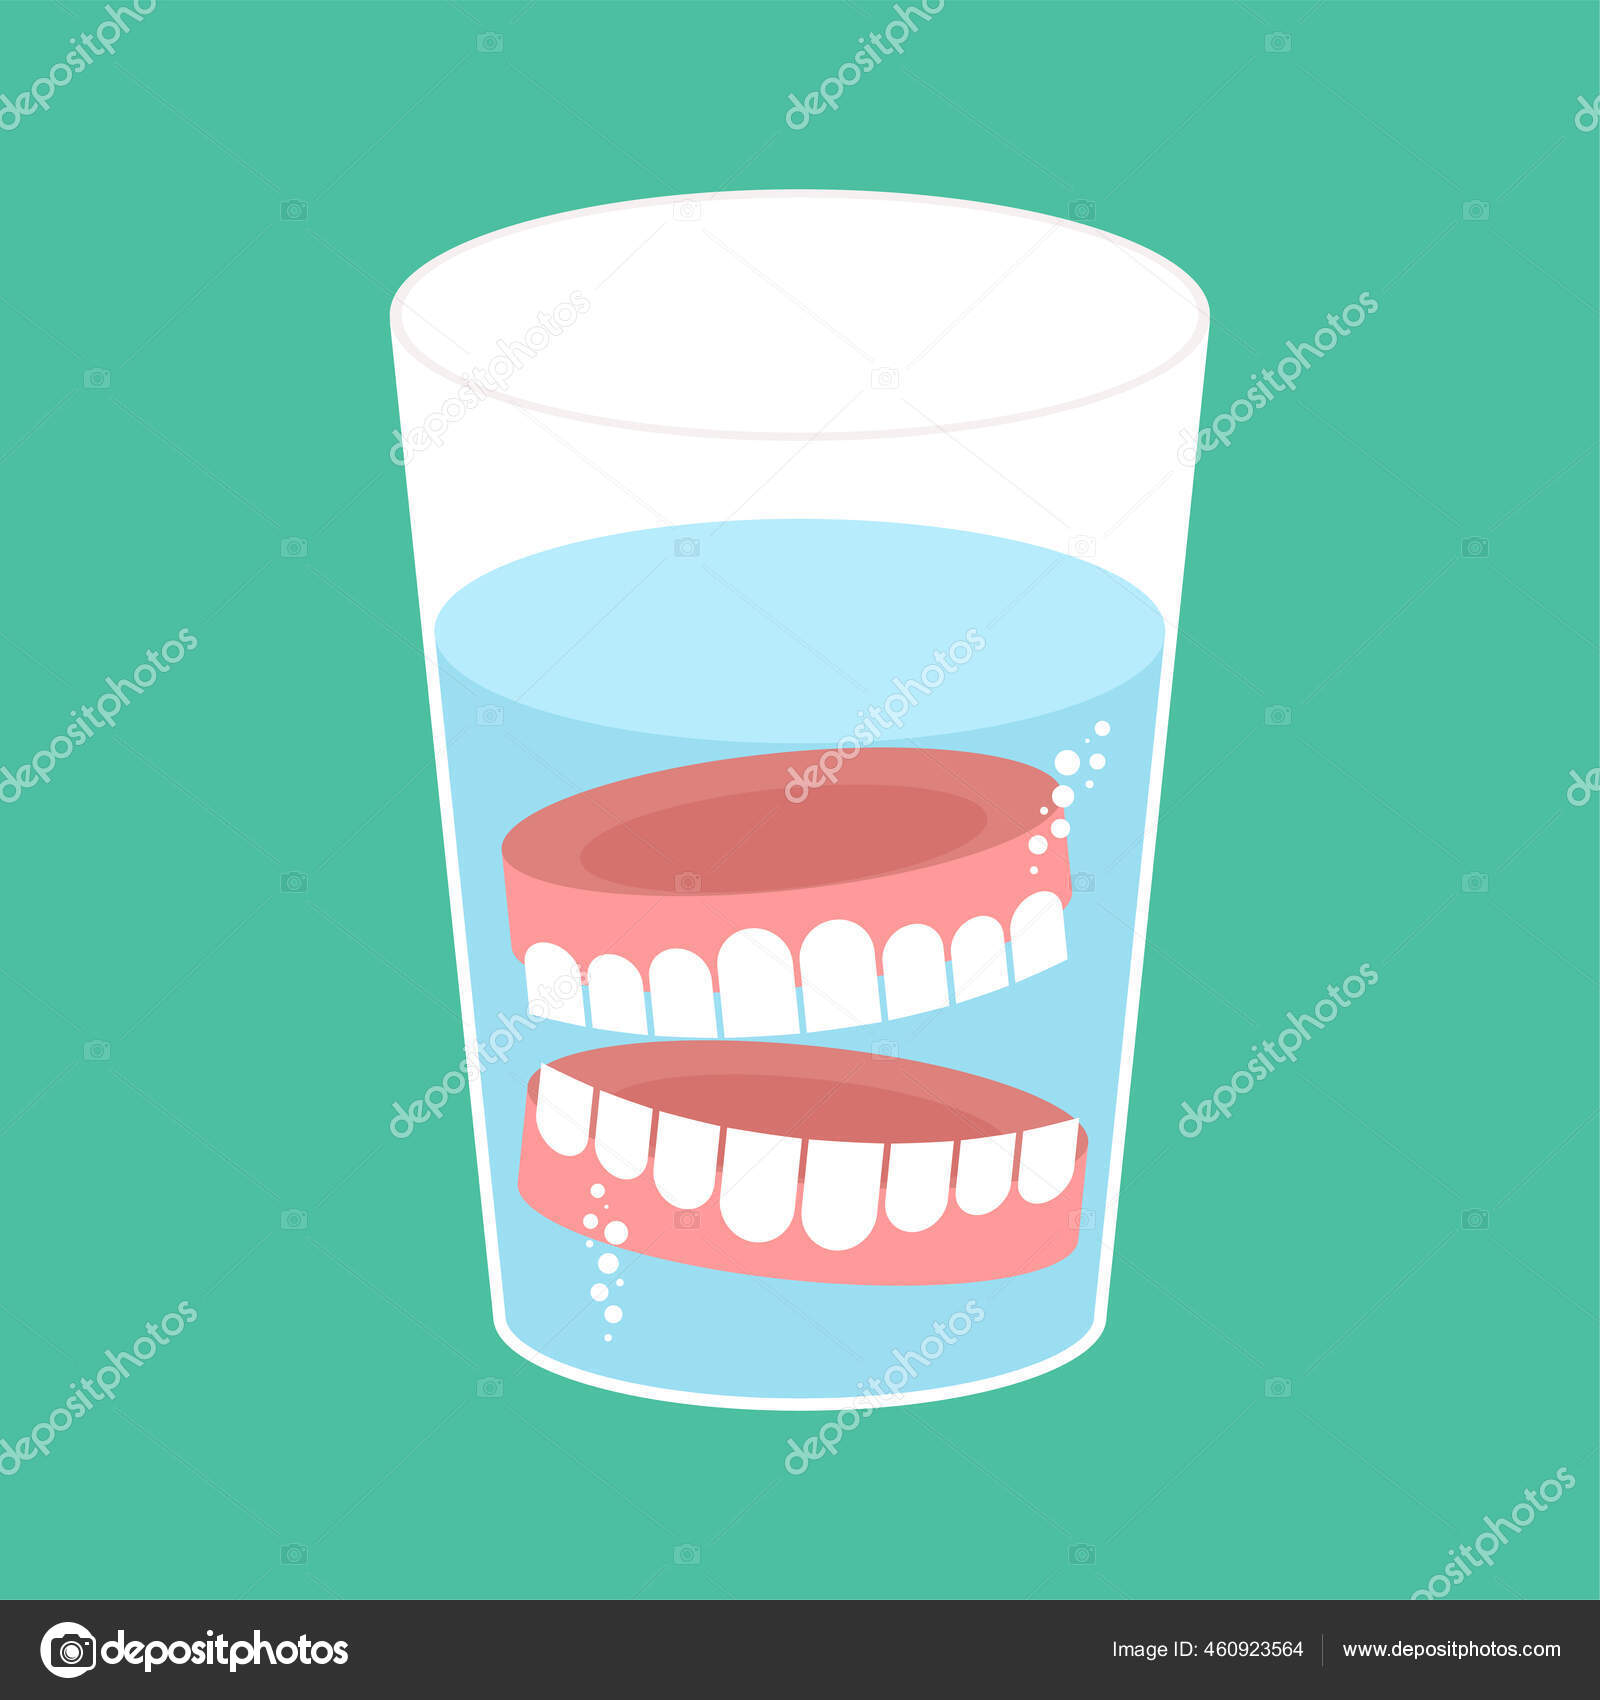 Fausses dents humaines illustration de vecteur. Illustration du  illustration - 218939838